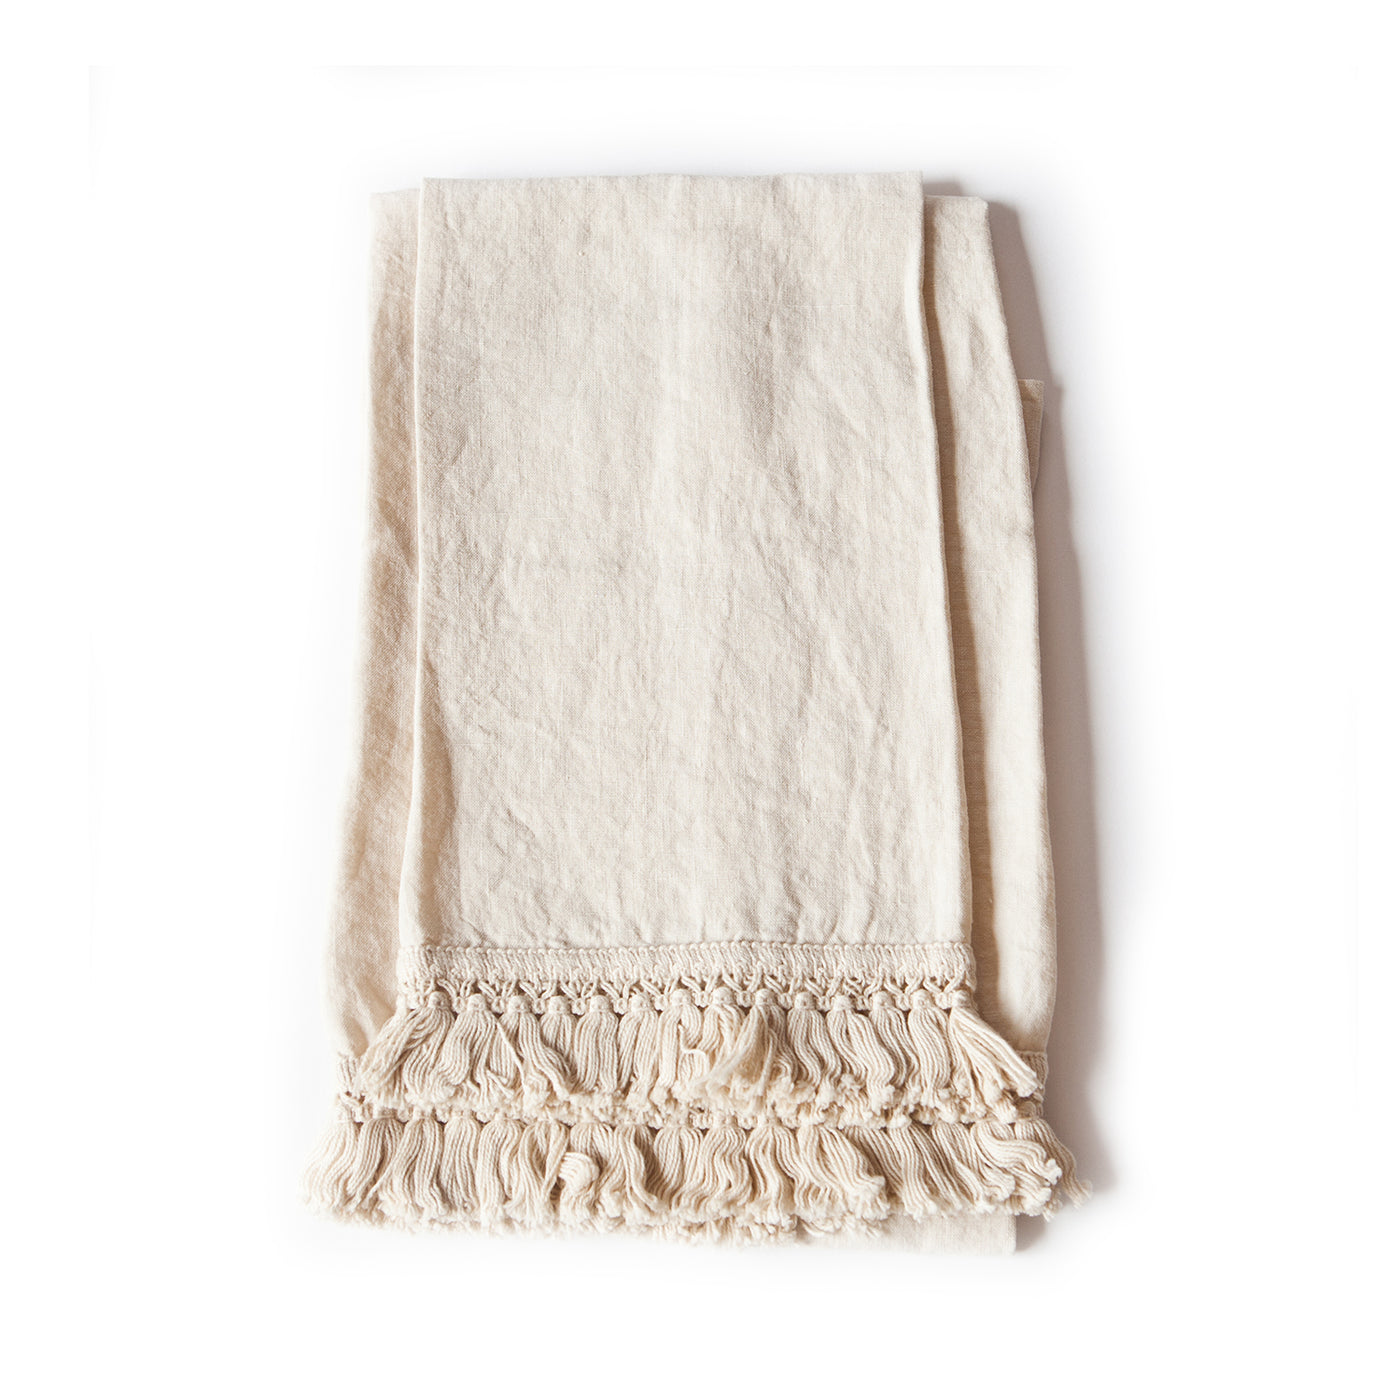 Lněné ručníky od společnosti Once Milano, Romein, doplňky do koupelny, luxusní koupelnový textil